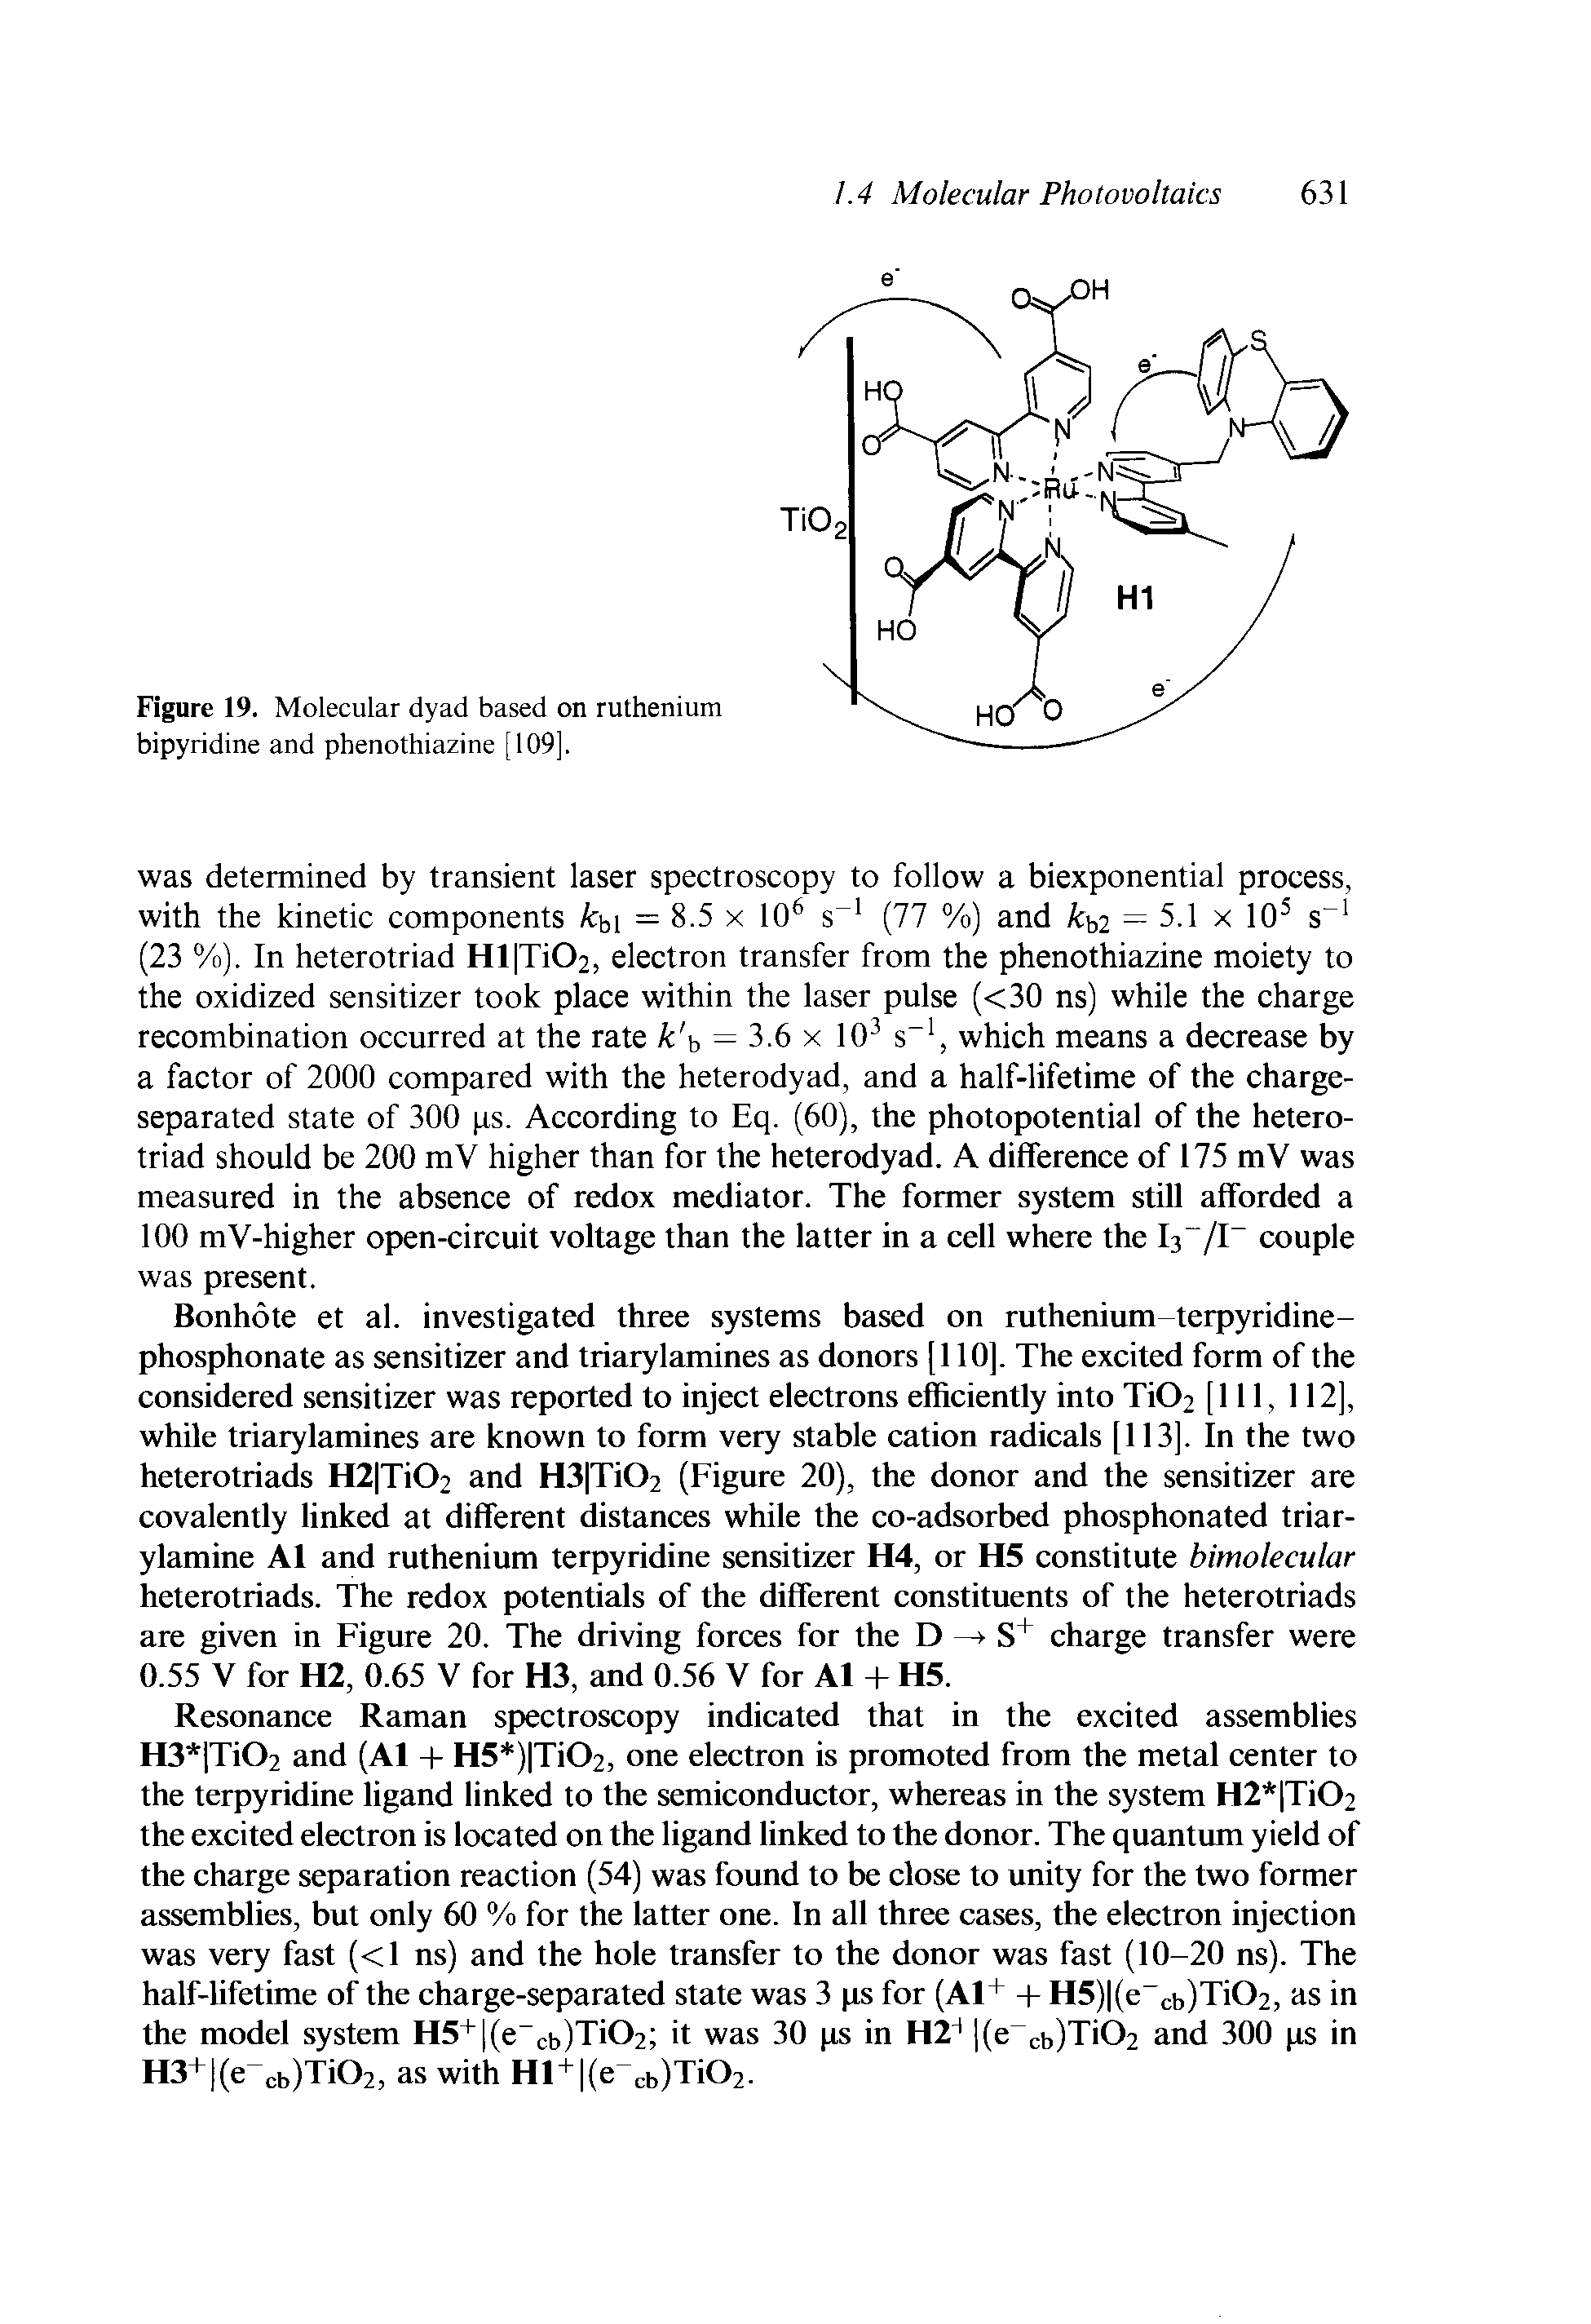 Figure 19. Molecular dyad based on ruthenium bipyridine and phenothiazine [109],...